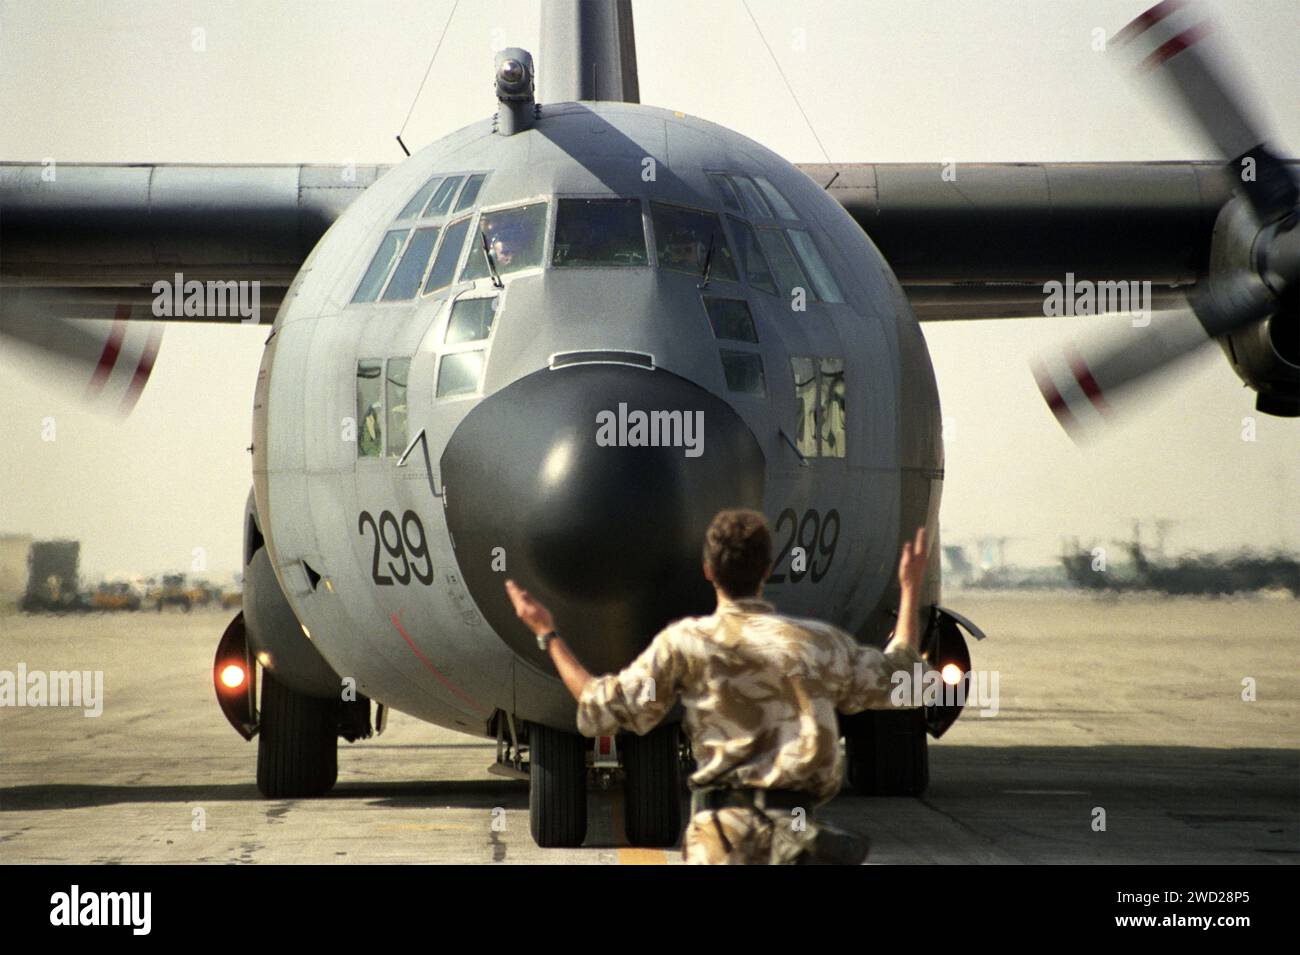 23rd janvier 1991 un avion de transport RAF C130 Hercules est guidé pendant qu'il se déplace à l'aéroport international de Dhahran pendant la guerre du Golfe. Banque D'Images